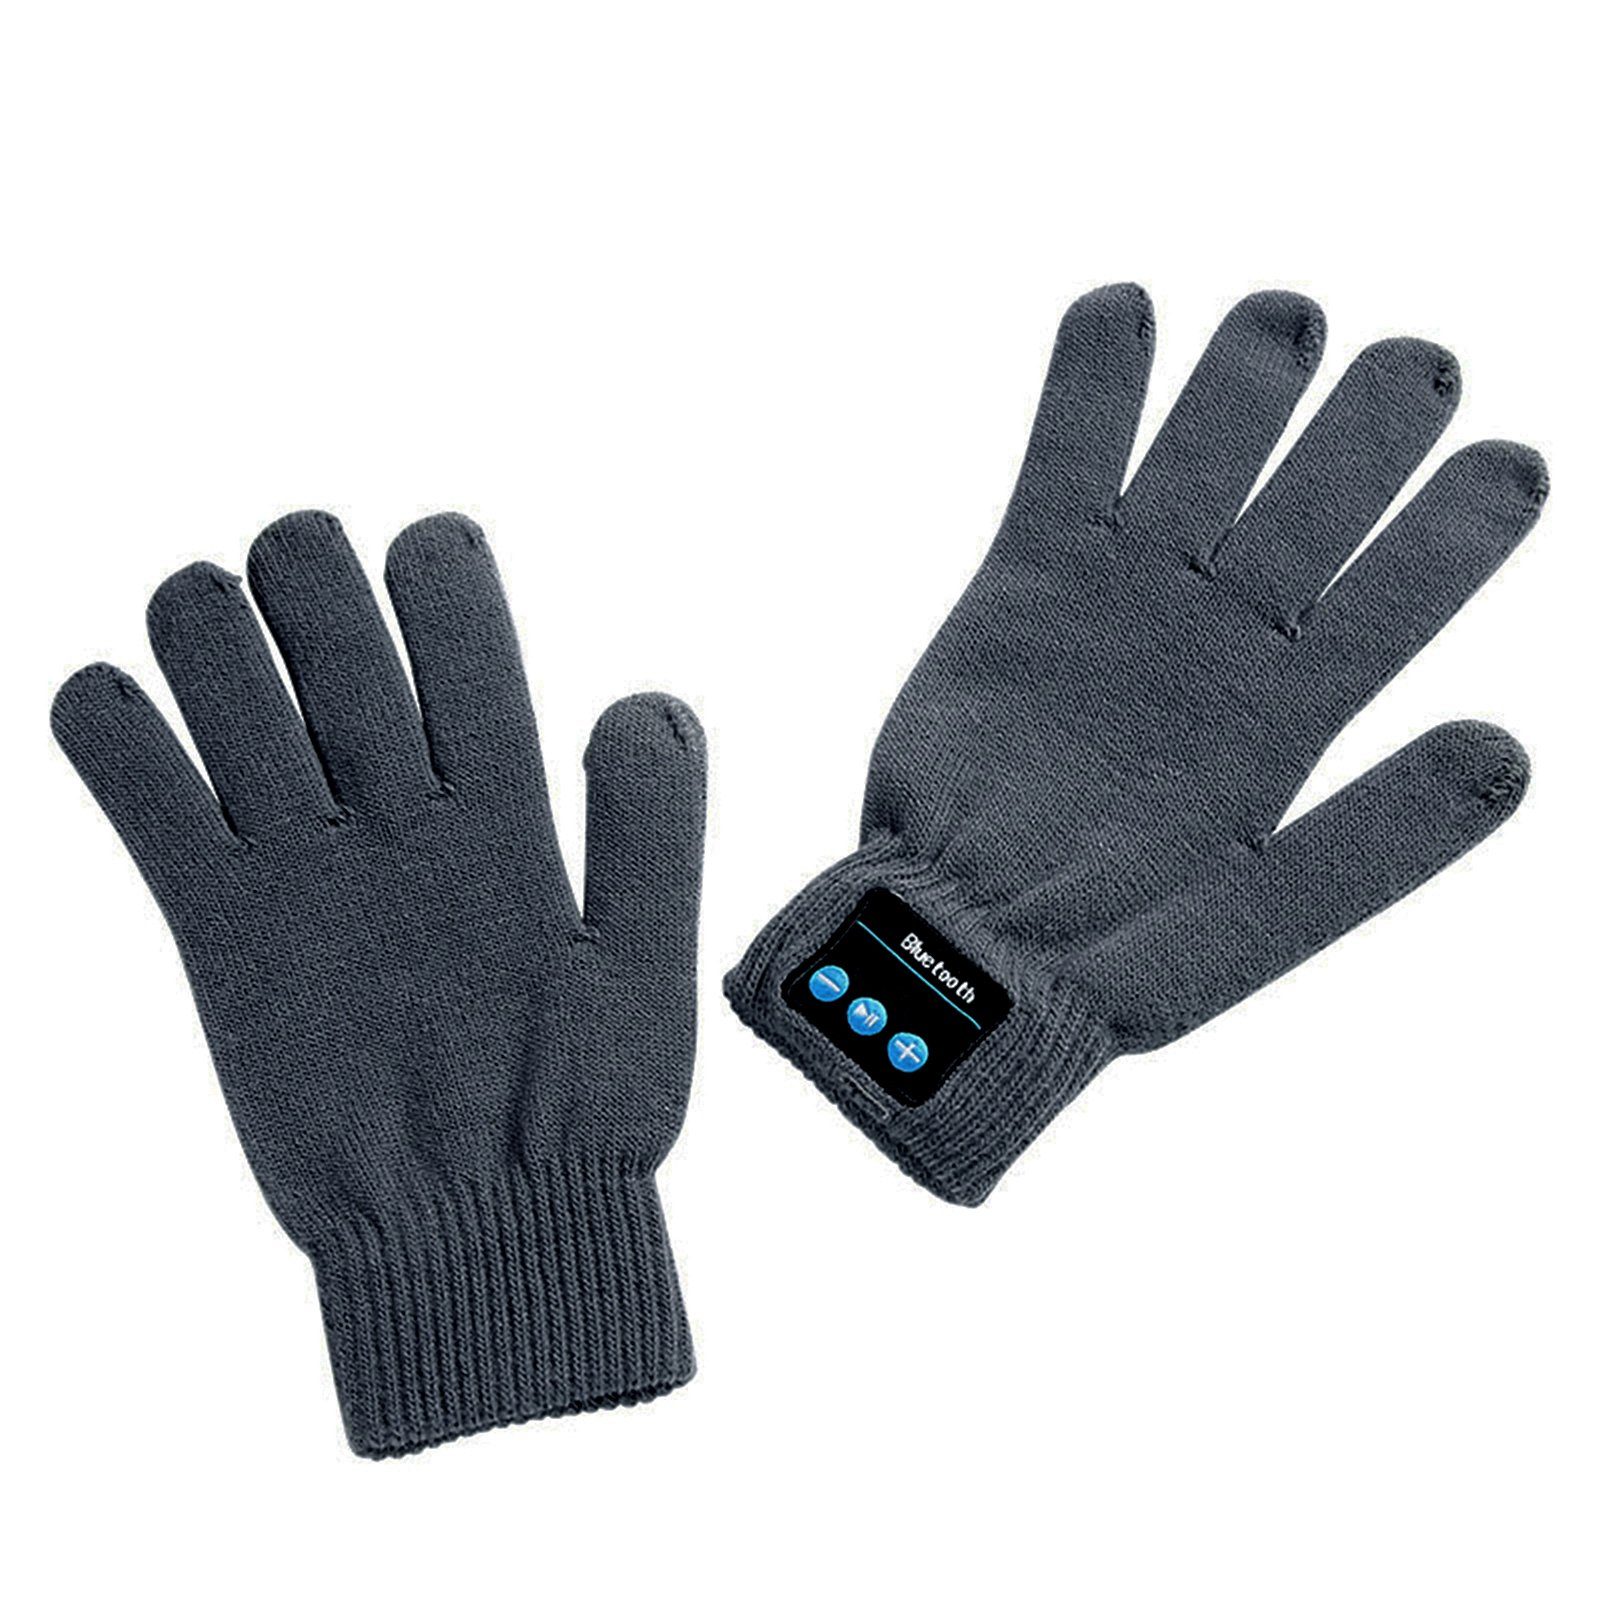 Drahtlose Telefon Screen Blusmart Lautsprecher Handschuhe grau Strickhandschuhe Touch Bluetooth Warm